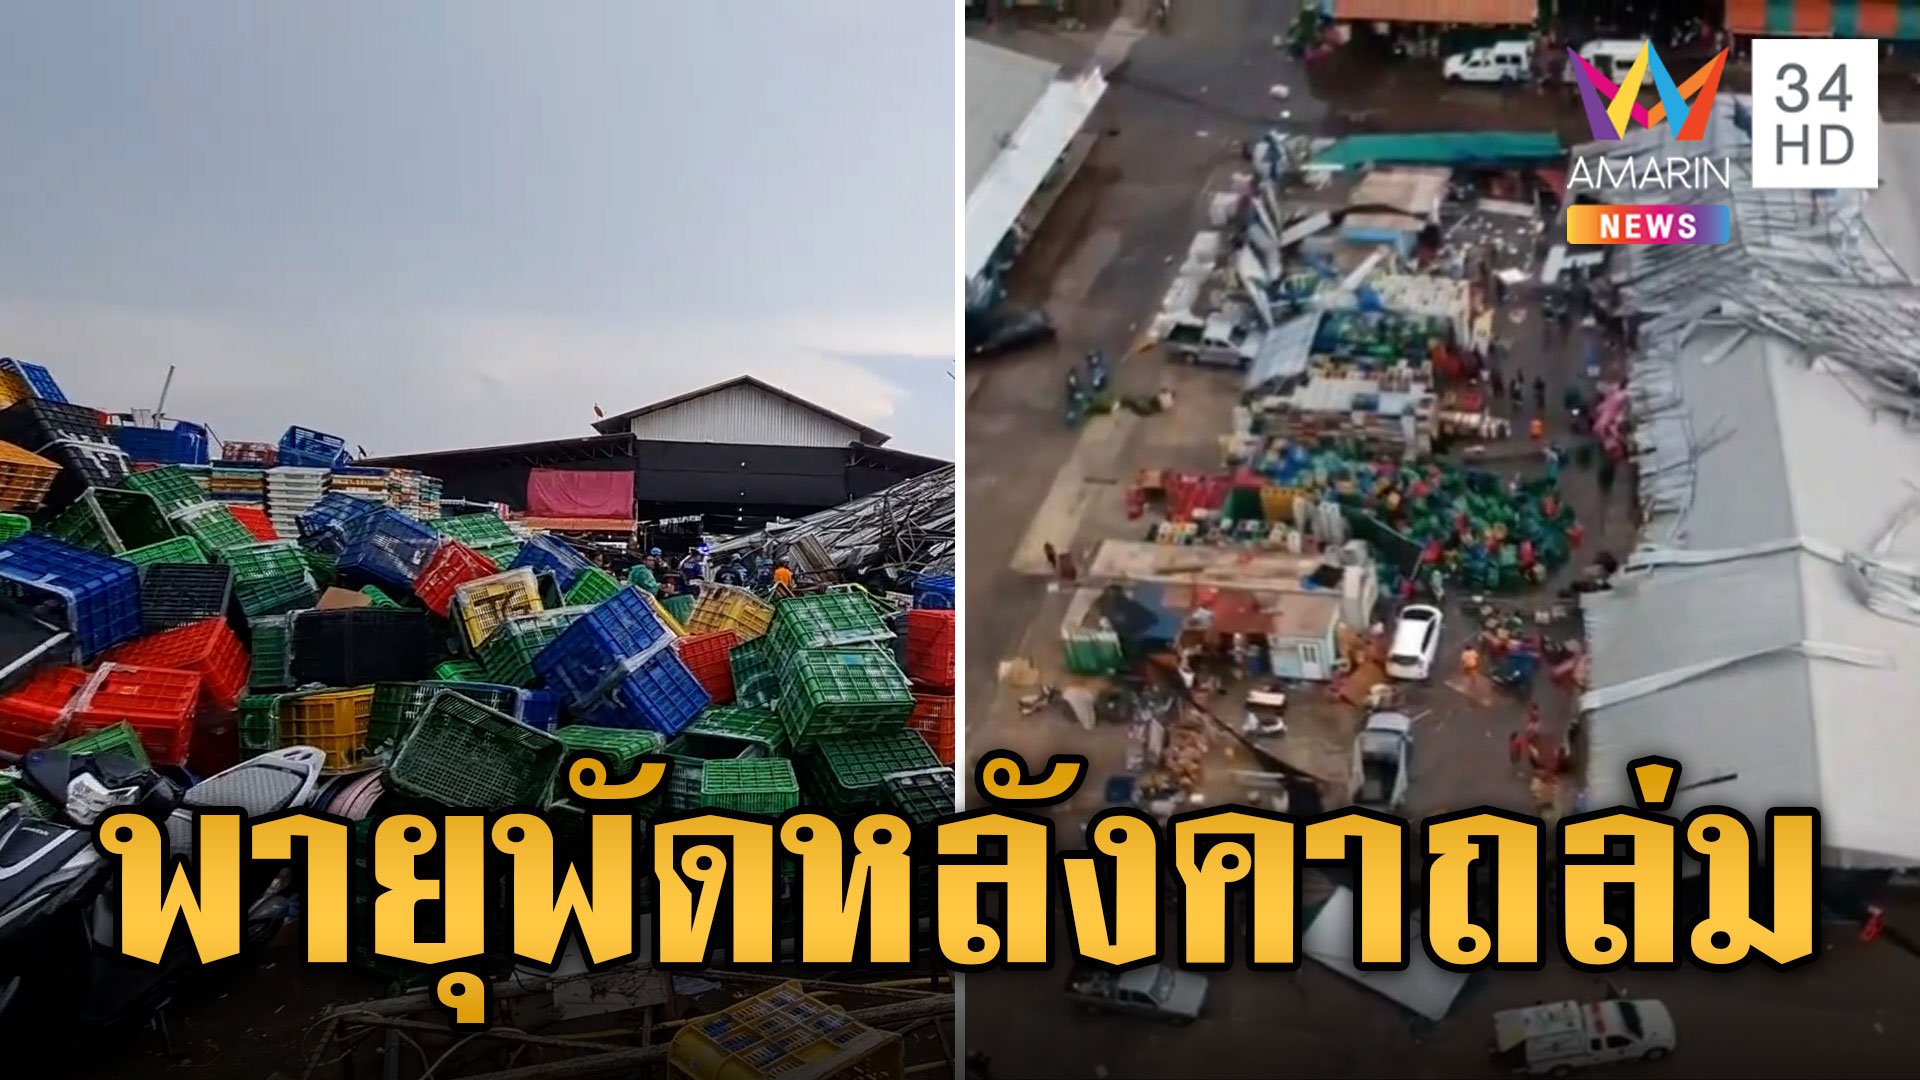 พายุพัดถล่มตลาดไทยเจริญ โครงเหล็กหลังคาล้มทับแม่ค้าเจ็บสาหัส | ข่าวเที่ยงอมรินทร์ | 17 พ.ค. 67 | AMARIN TVHD34